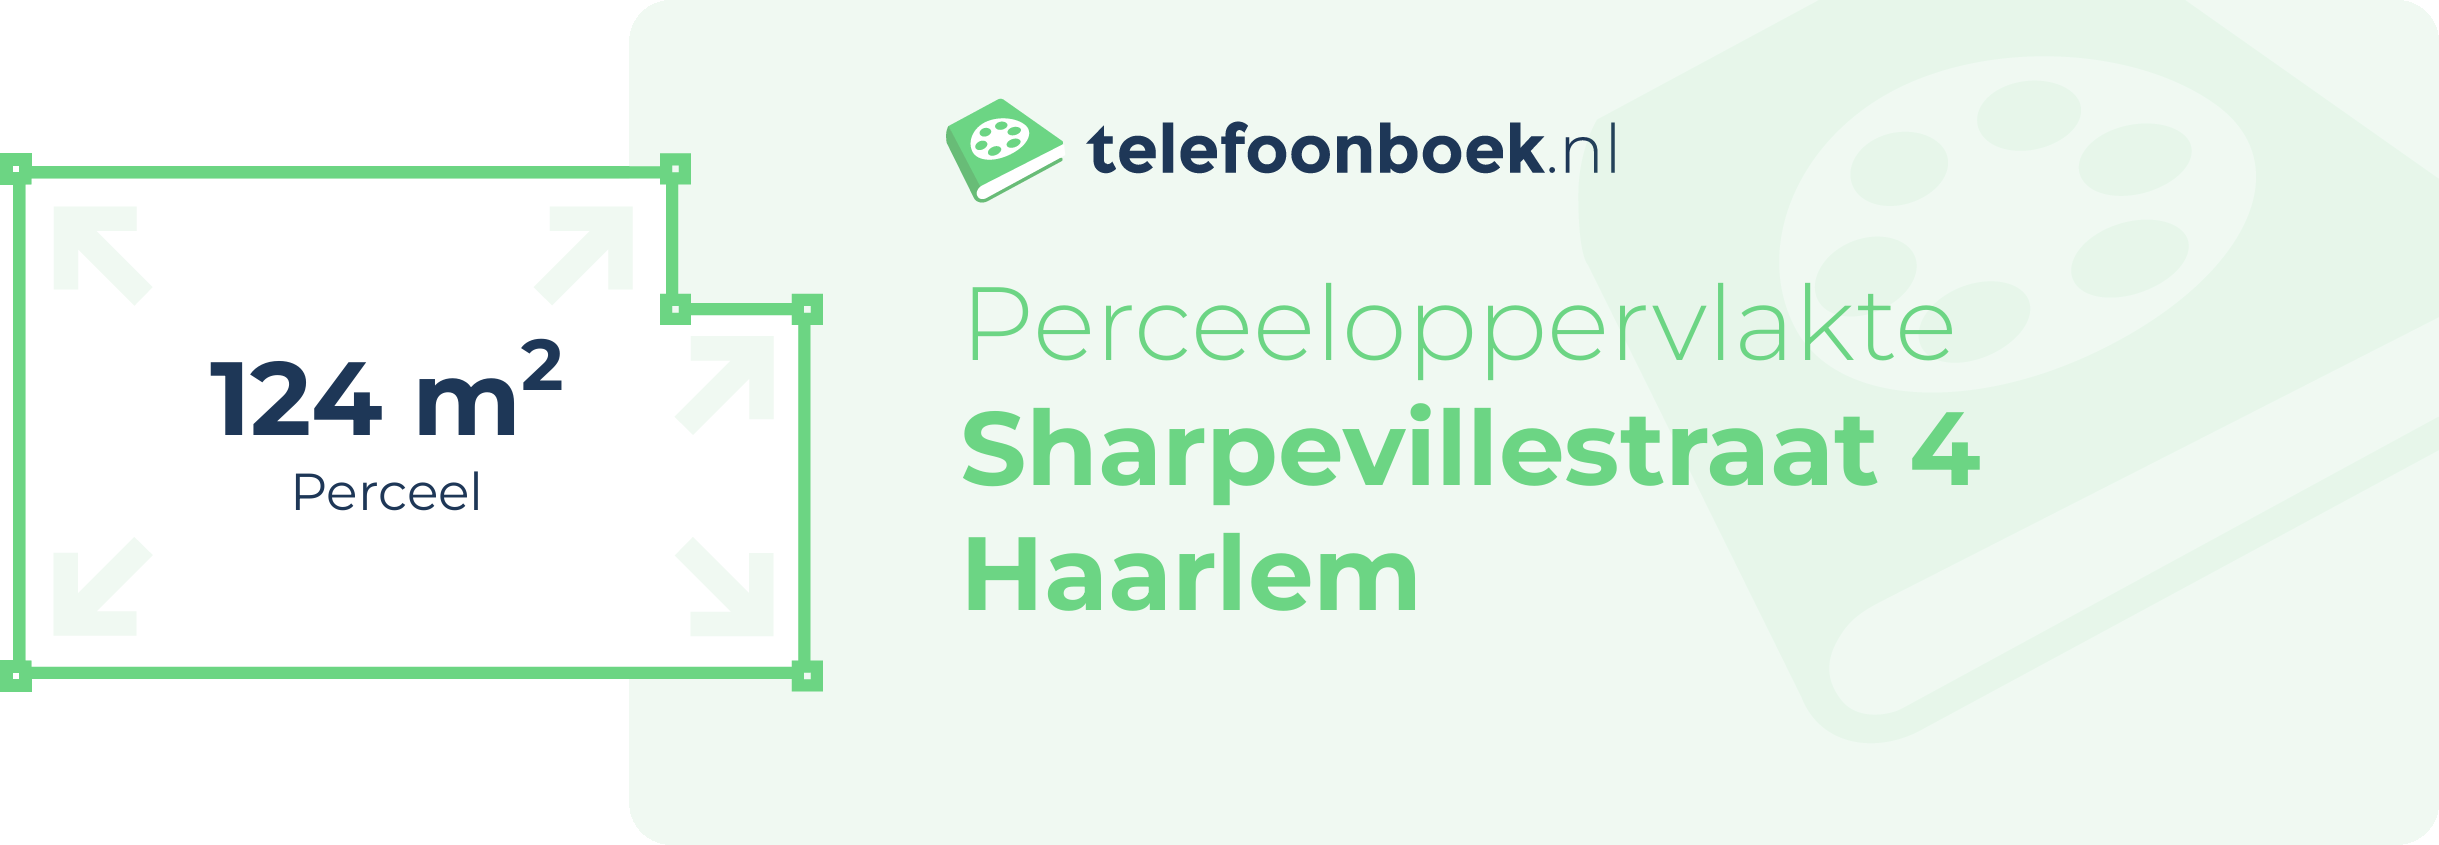 Perceeloppervlakte Sharpevillestraat 4 Haarlem